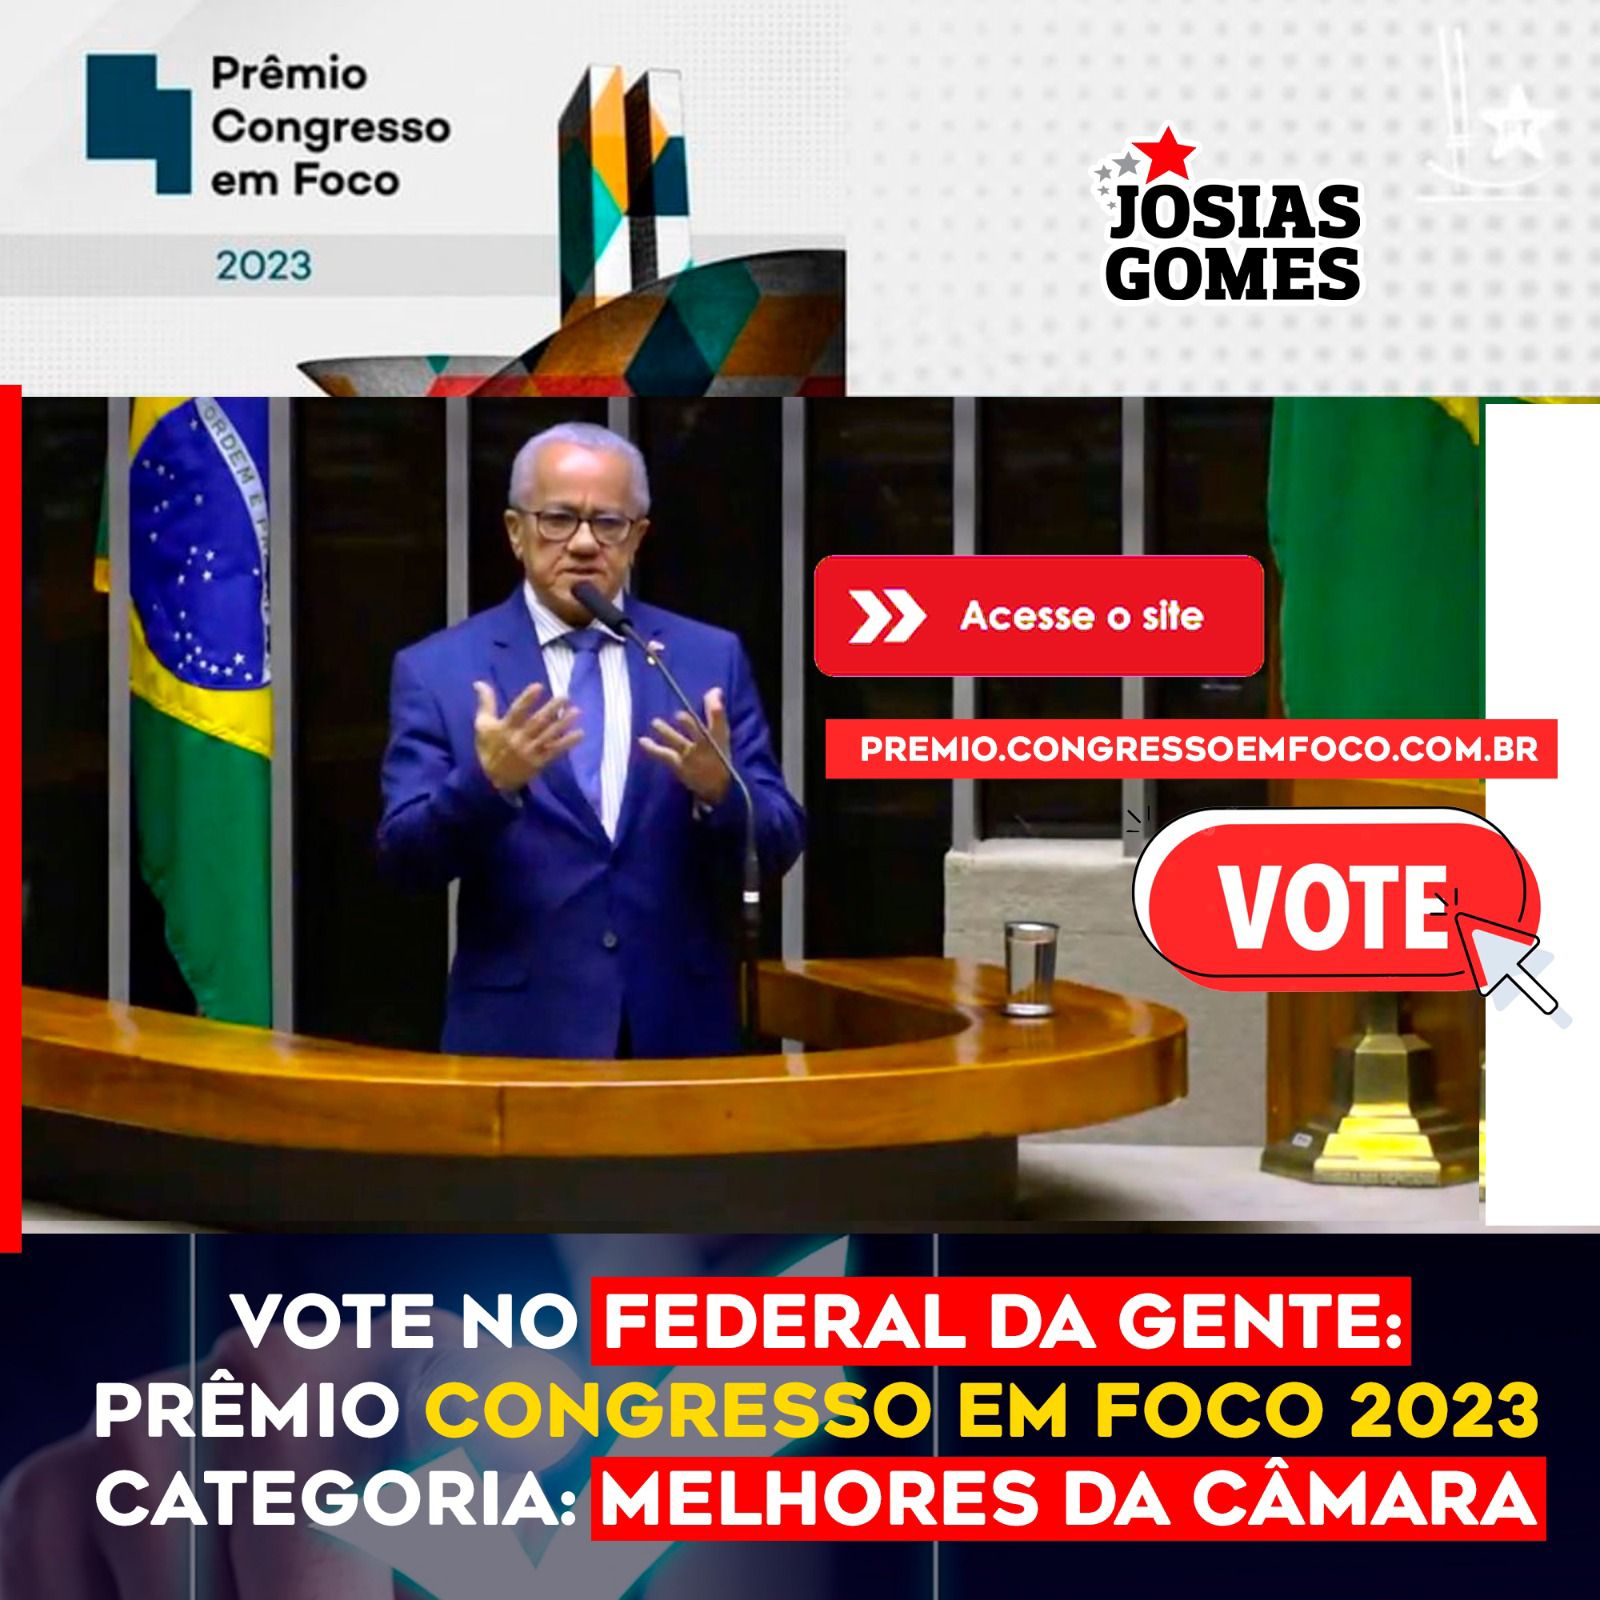 Prêmio Congresso Em Foco 2023: Vote Josias Gomes, O Federal Da Gente!